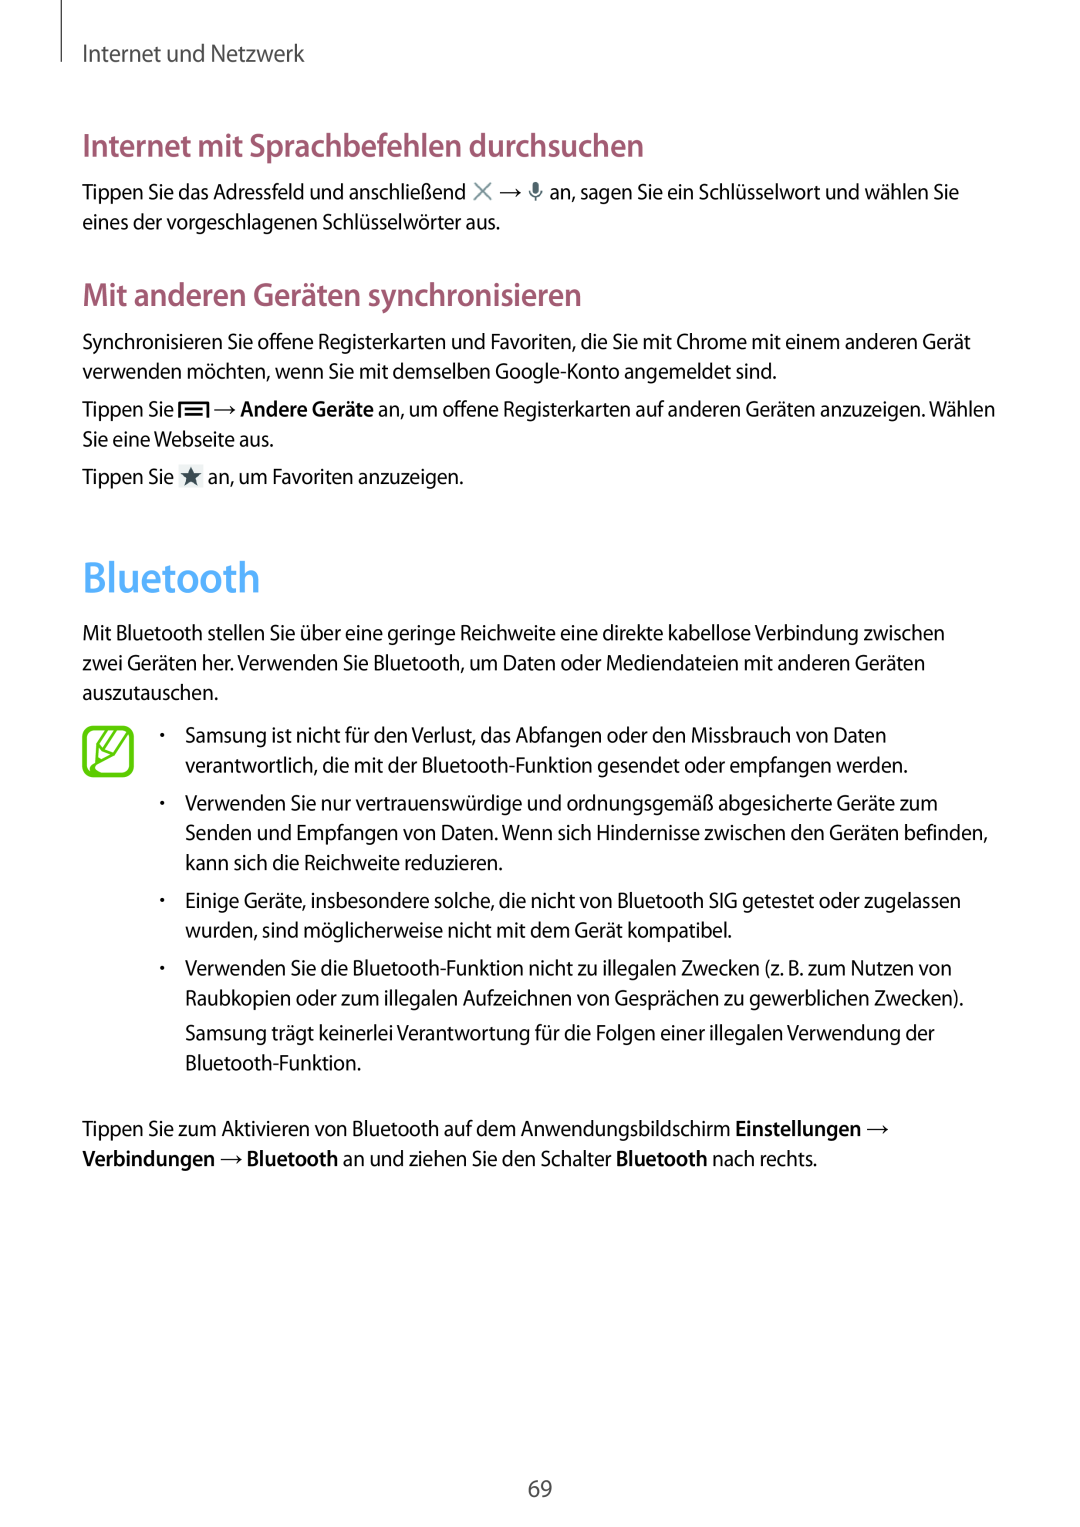 Samsung GT-I9505ZWADTM manual Bluetooth, Mit anderen Geräten synchronisieren, Internet mit Sprachbefehlen durchsuchen 